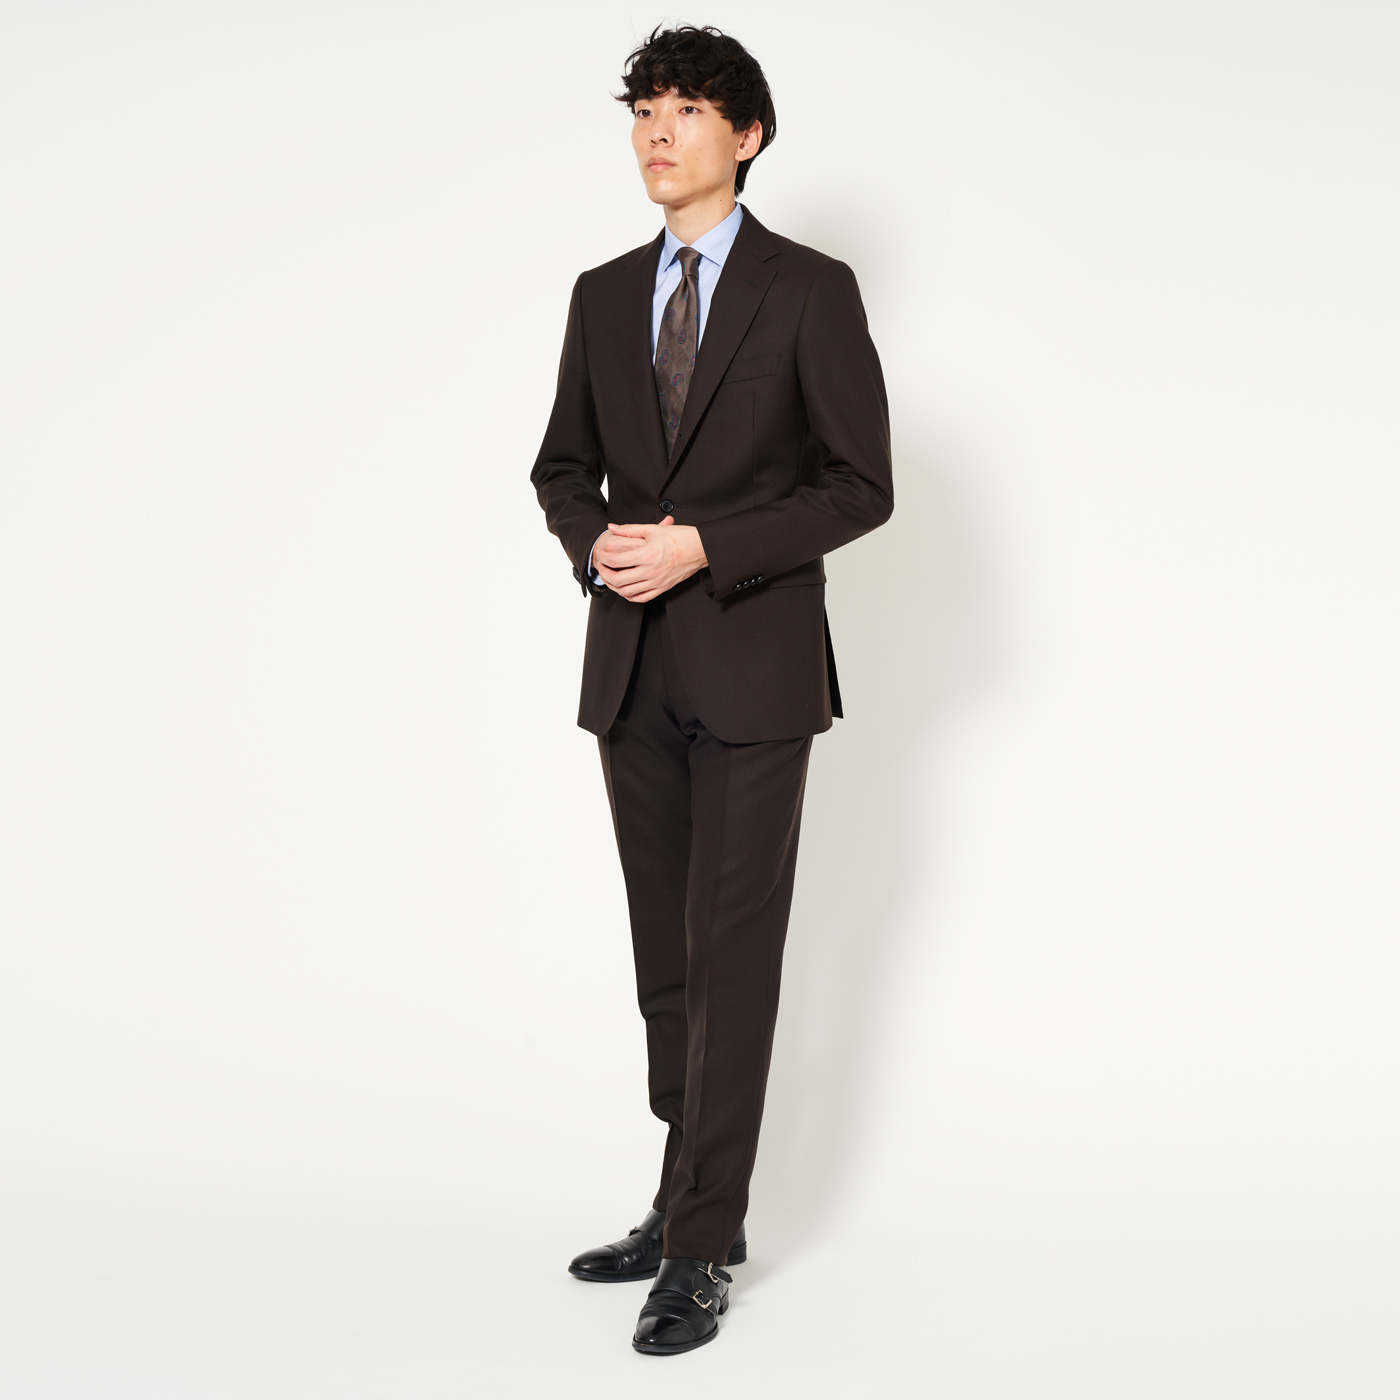 【STAFFコーデ】ブラウンスーツでつくる綺麗めスタイル